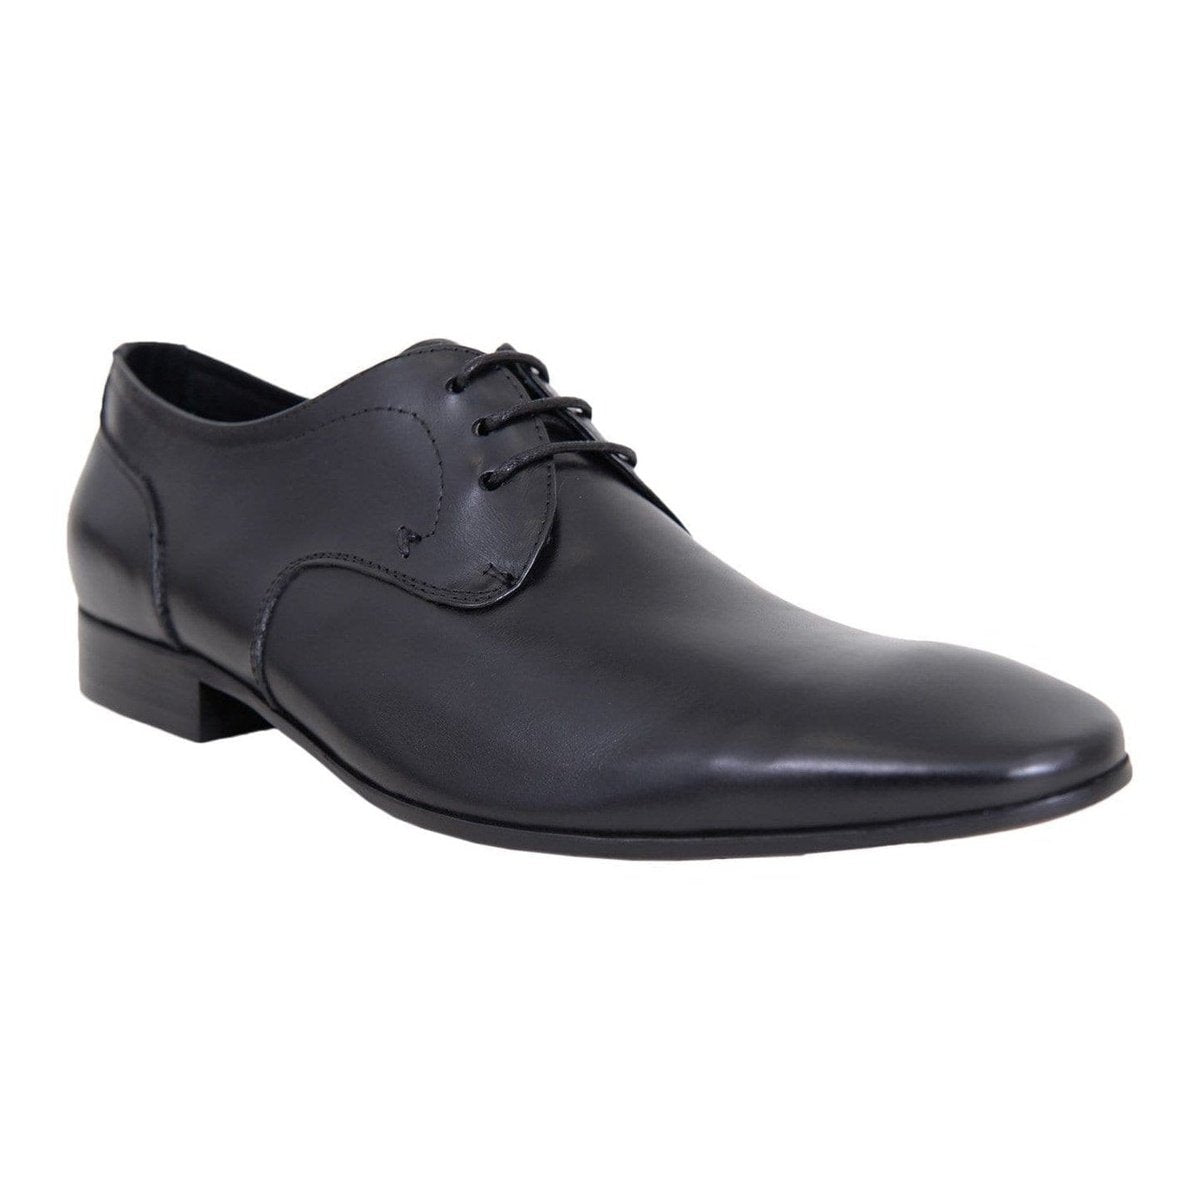 Carrucci Shoes For Amazon Carrucci Mens Black Plain Toe Oxford Leather Dress Shoes